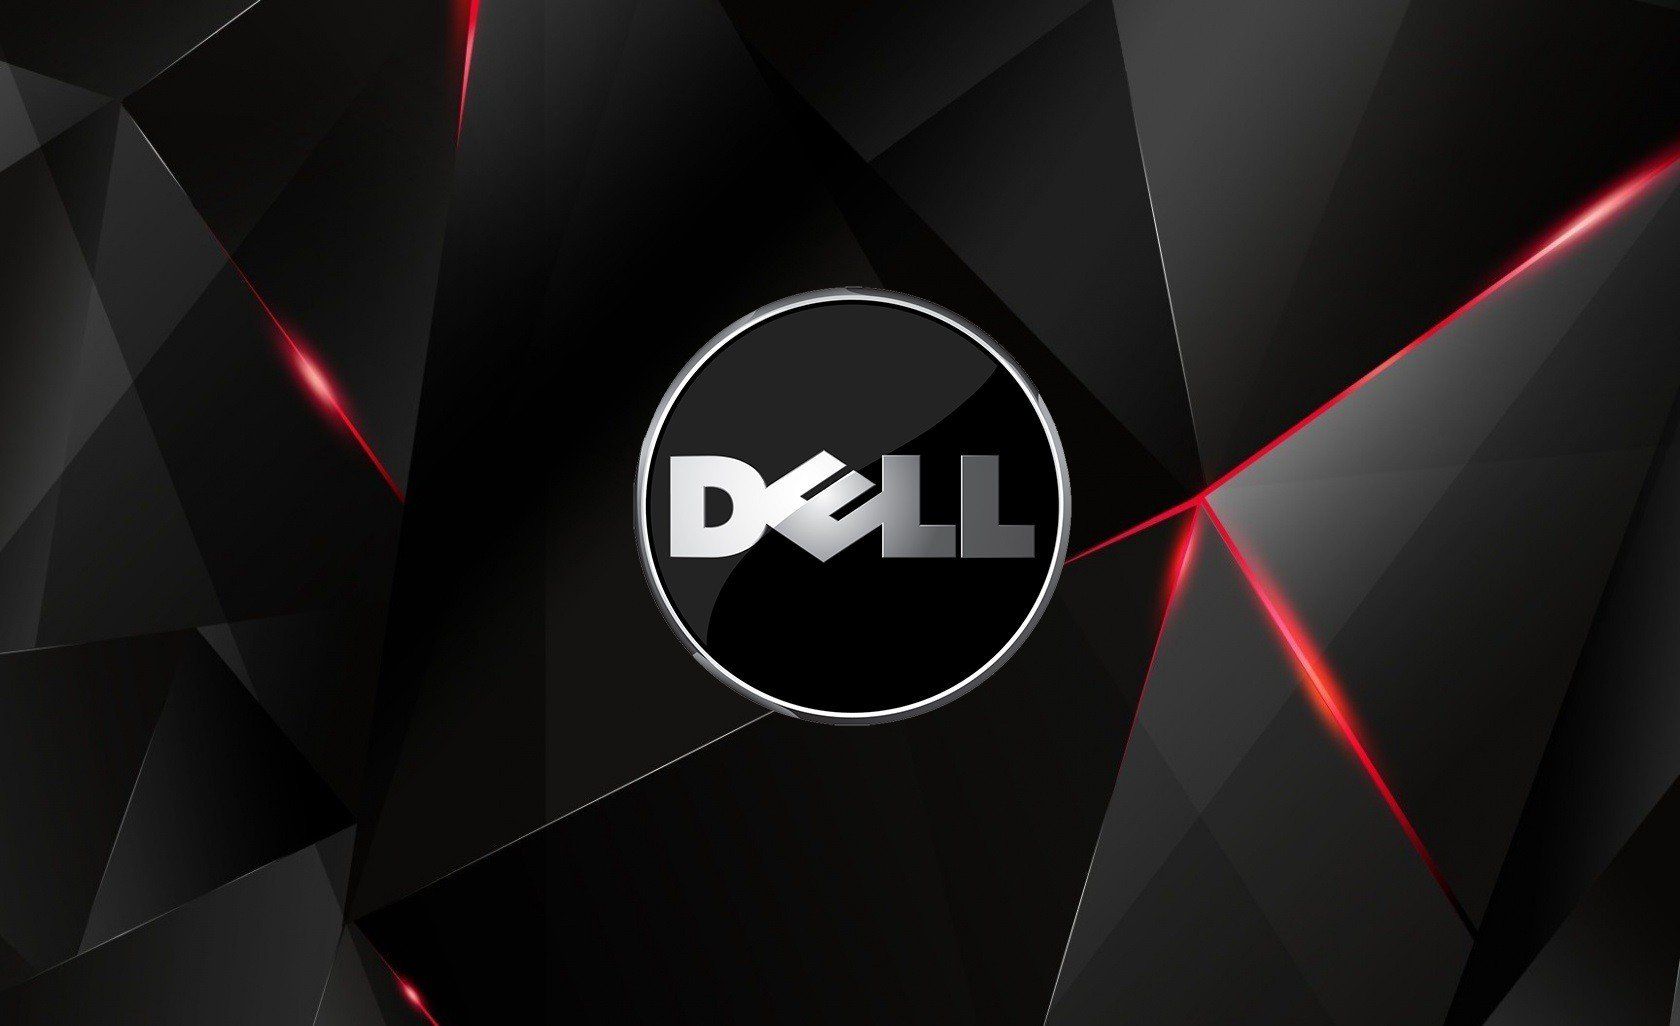 Fondos de pantalla de Dell - FondosMil